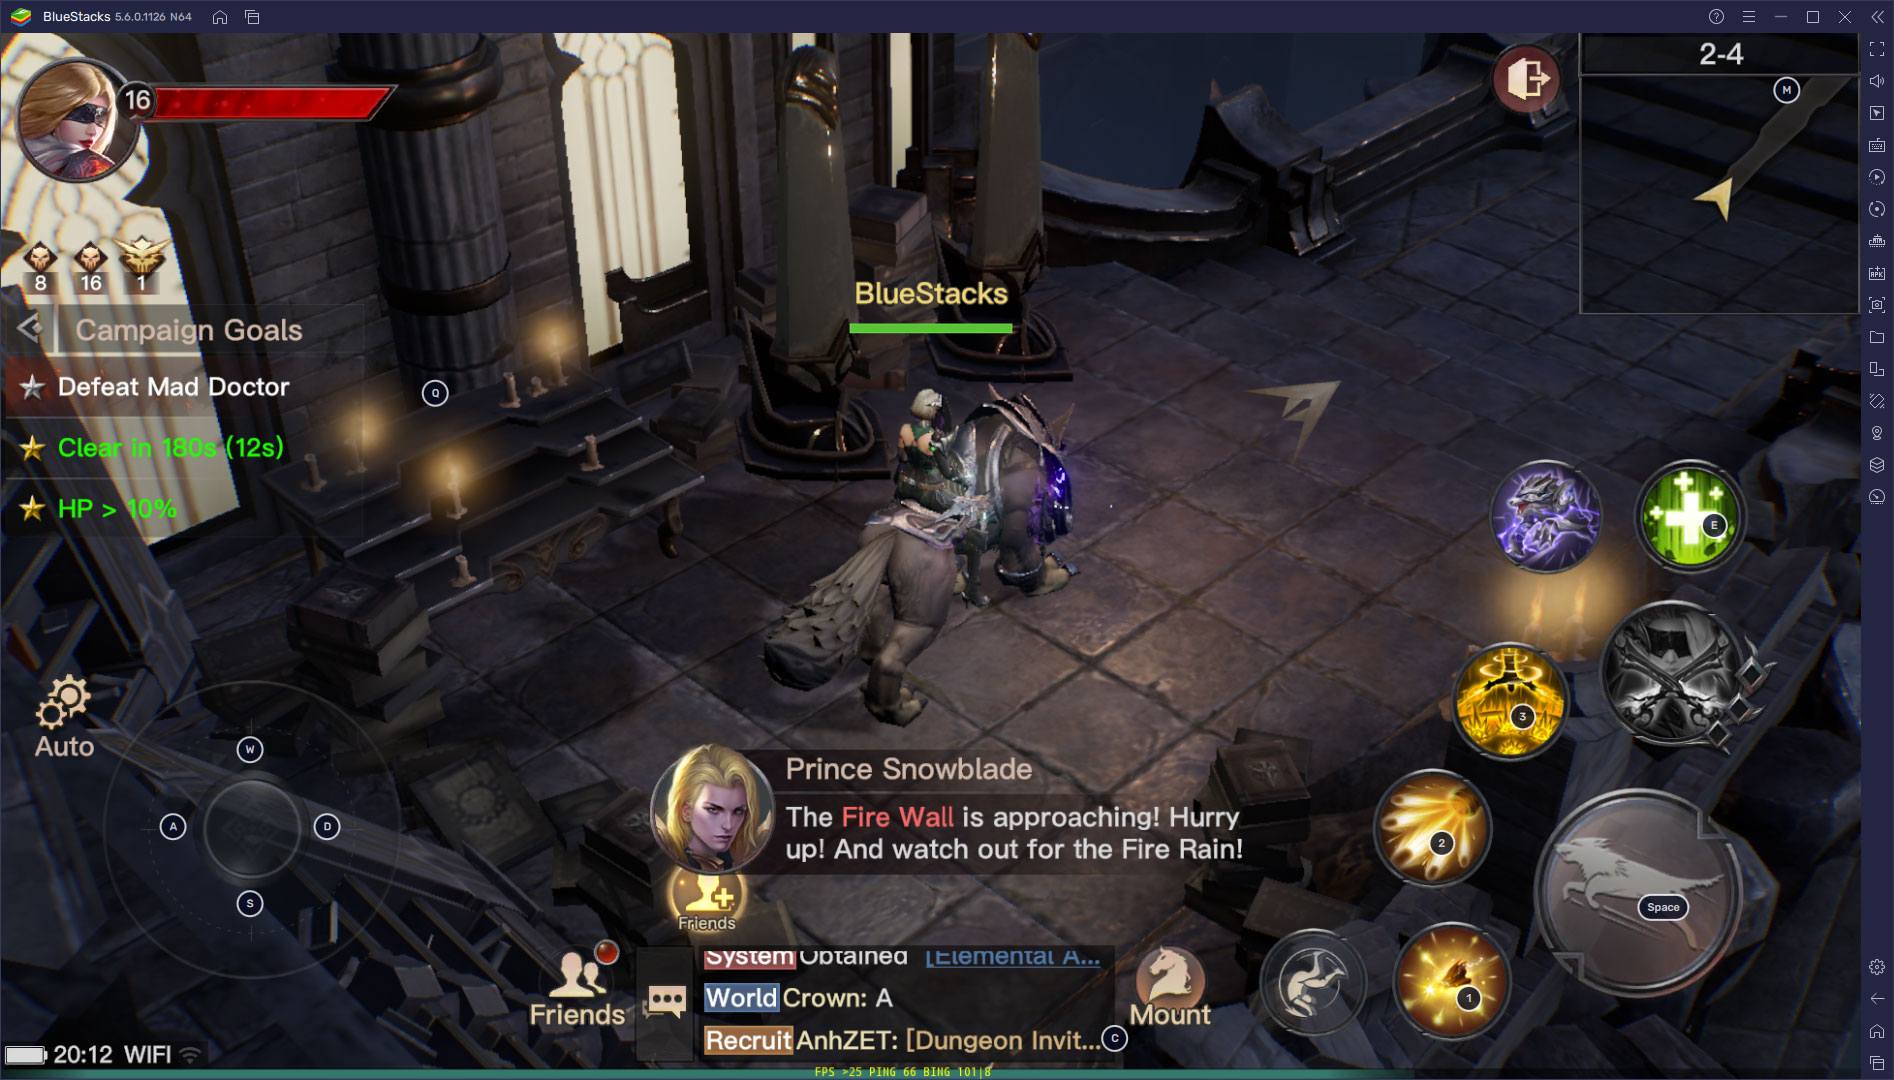 Dark Nemesis: Infinite Quest – Game thủ mới chơi cần lưu ý điều gì?